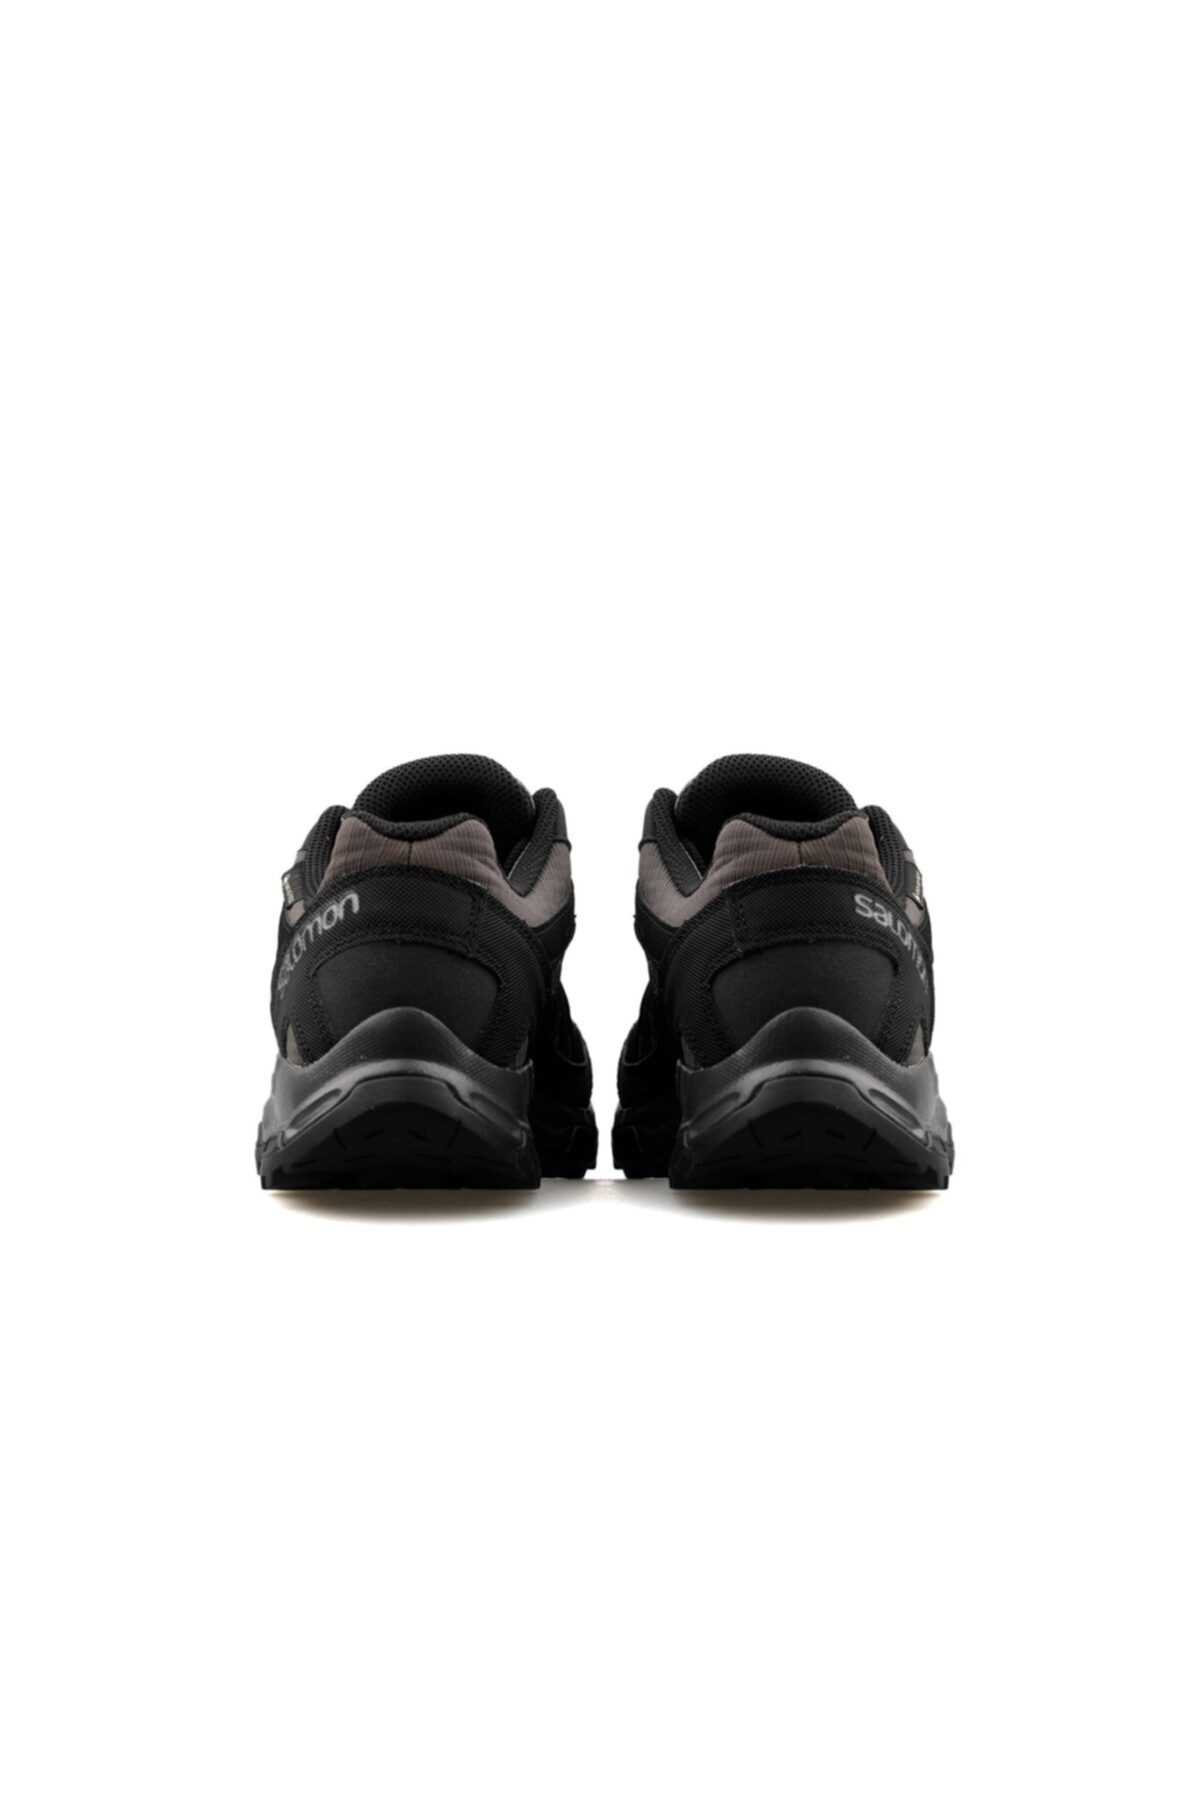 خرید انلاین کفش کوهنوردی مردانه خاص شیک Salomon رنگ مشکی کد ty1032160